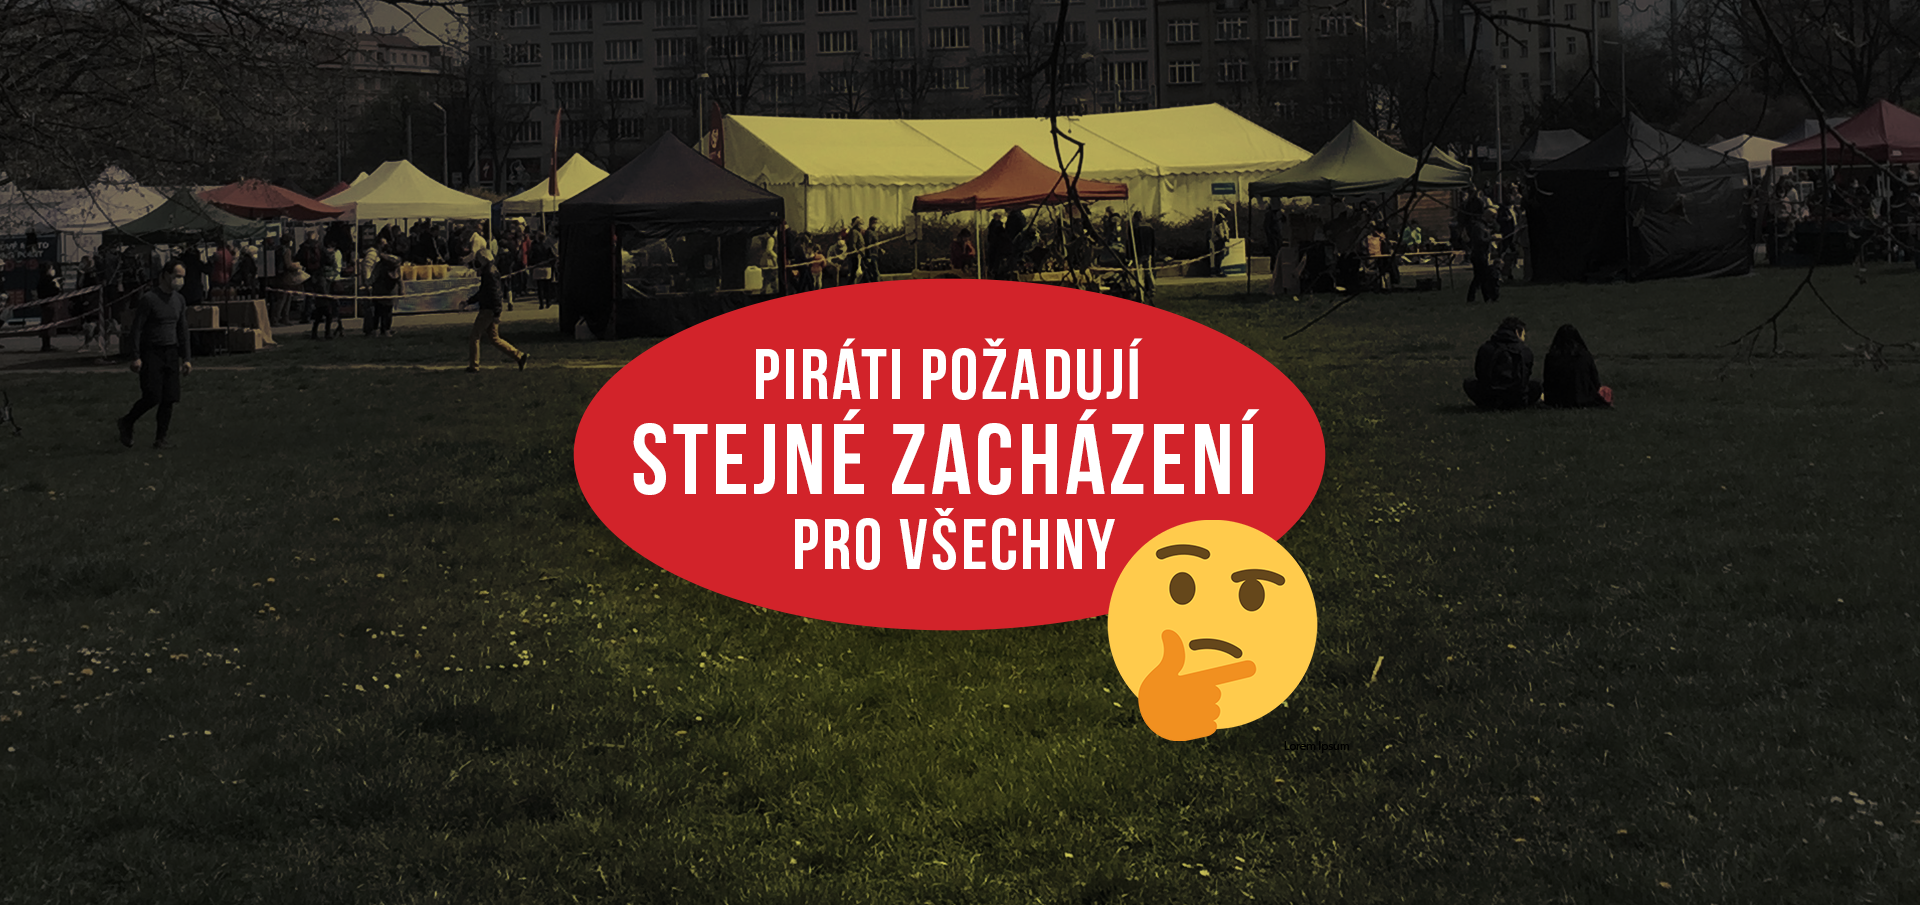 Dají-li či nedají-li radní Prahy 6 slevu městským nájemcům?